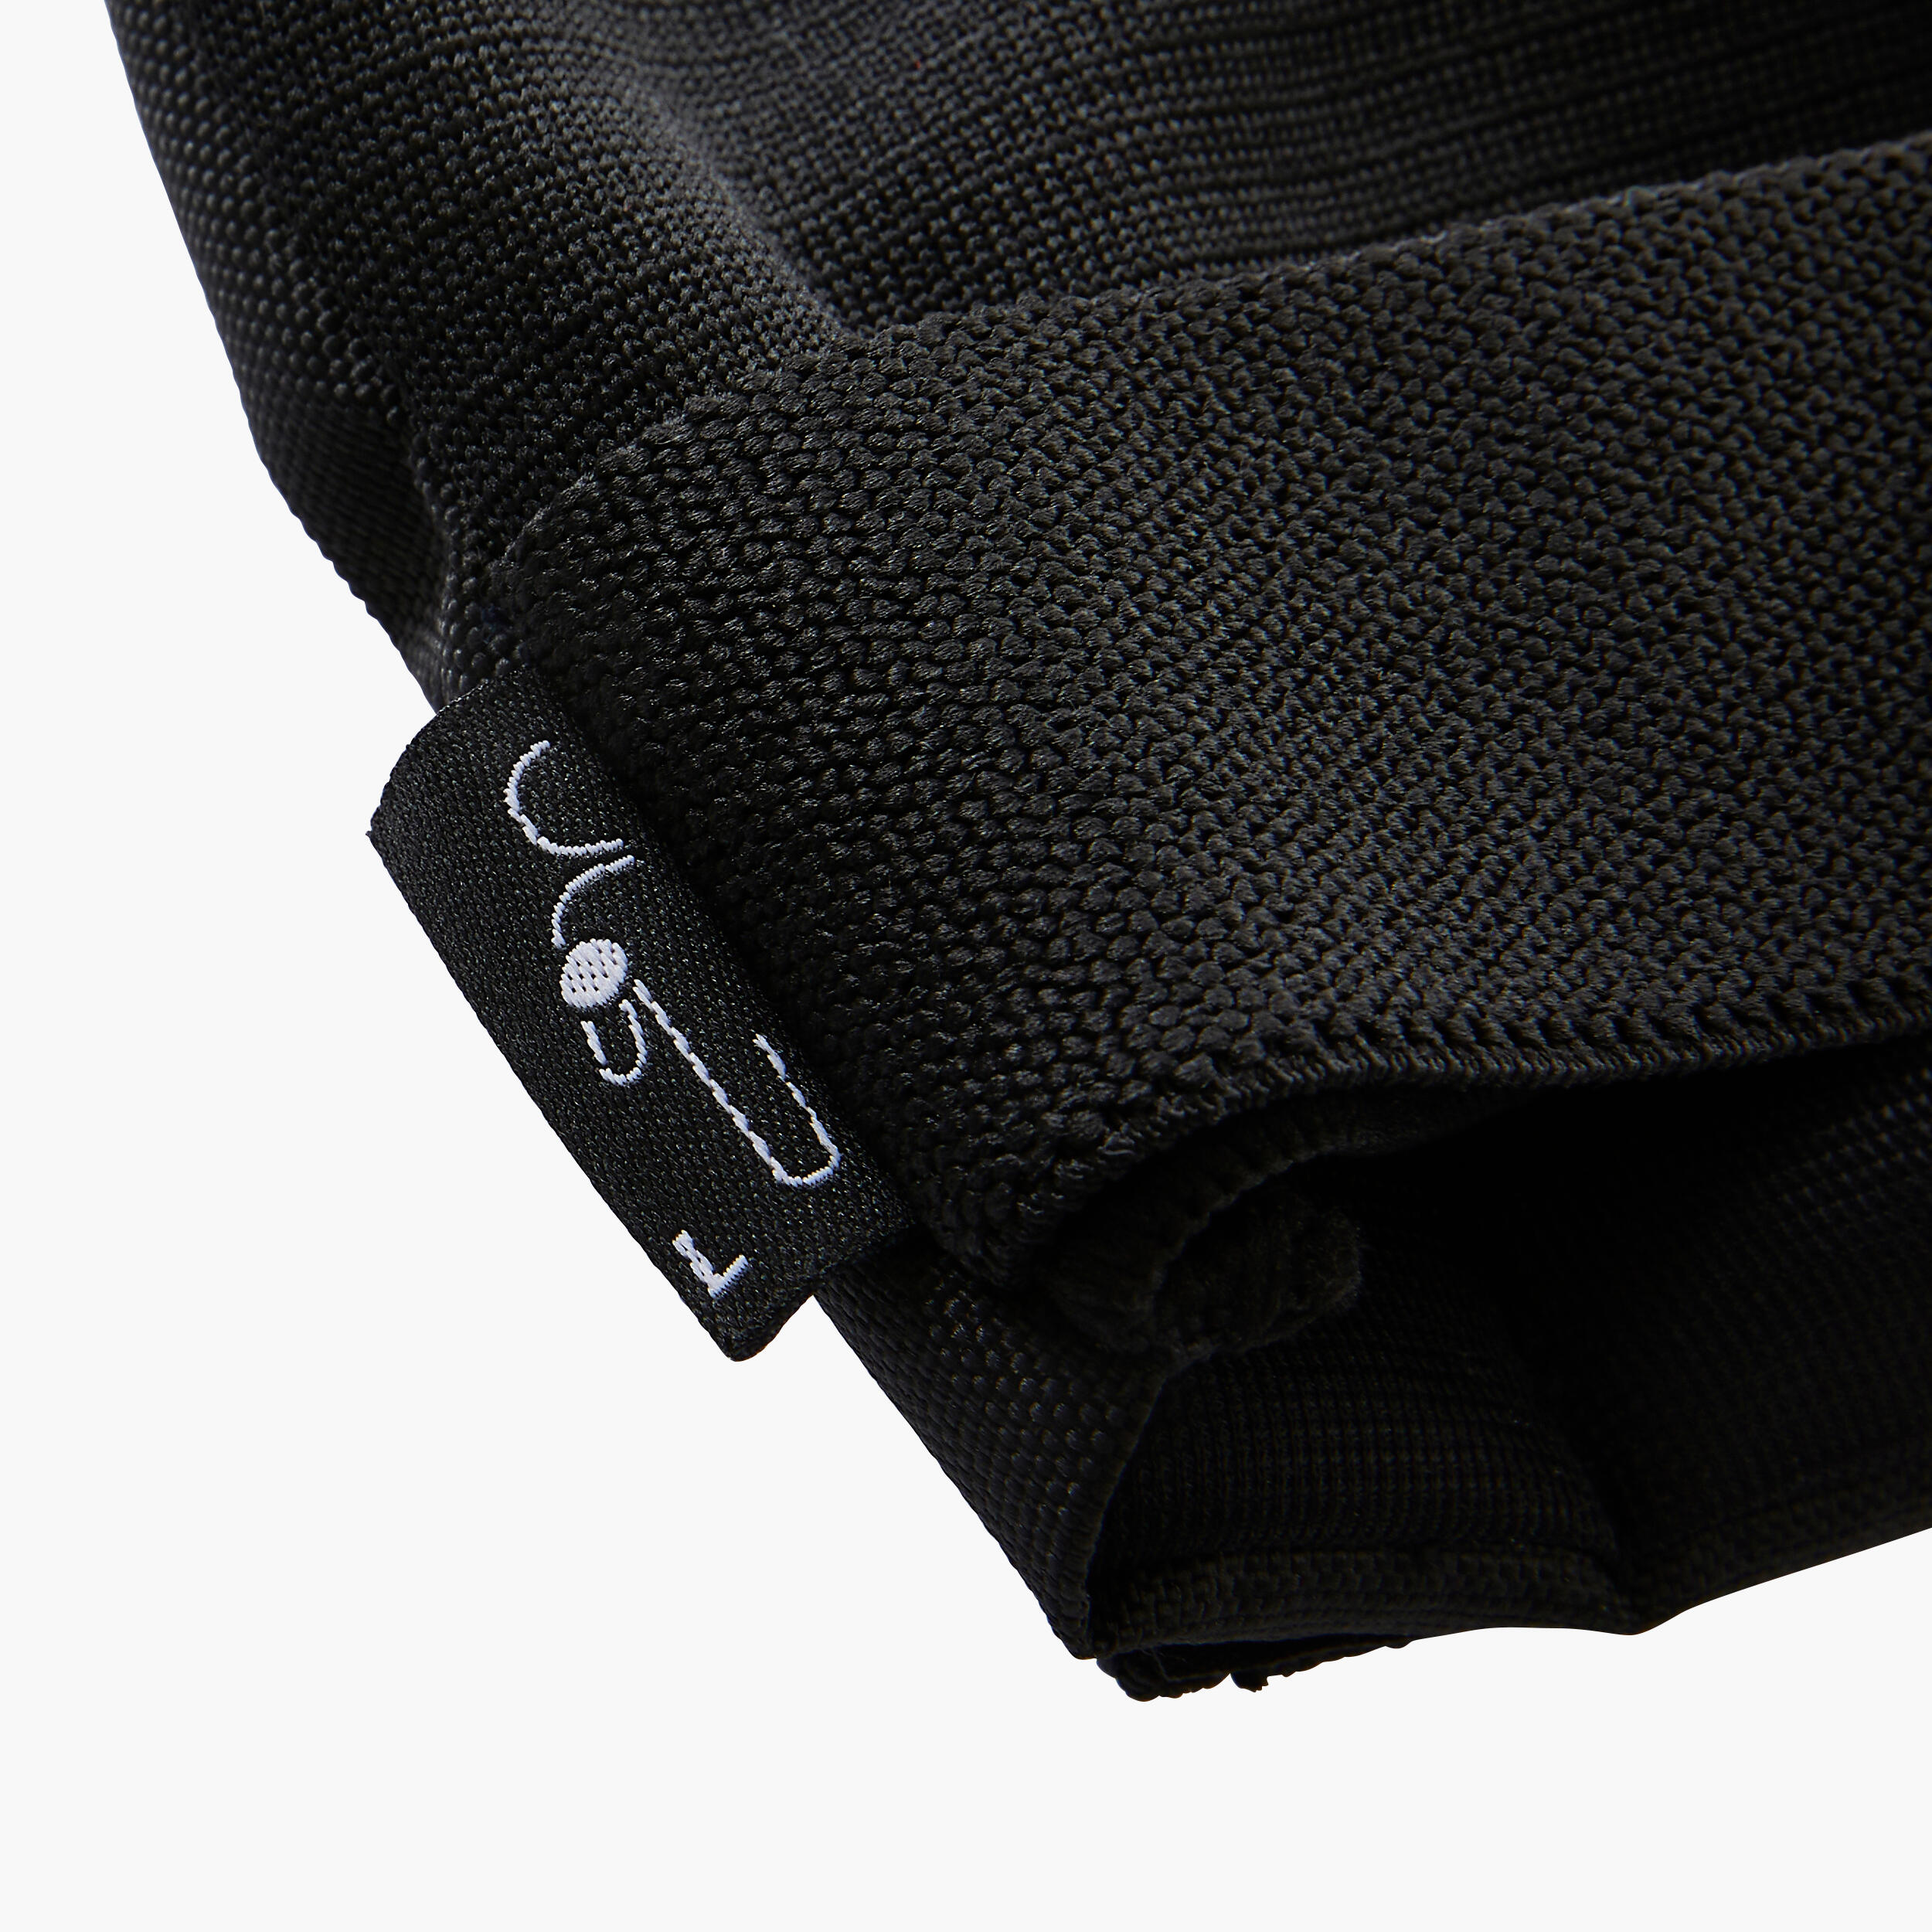 Inline Skate Protection - FIT 500 Black - black, black, black - Oxelo ...